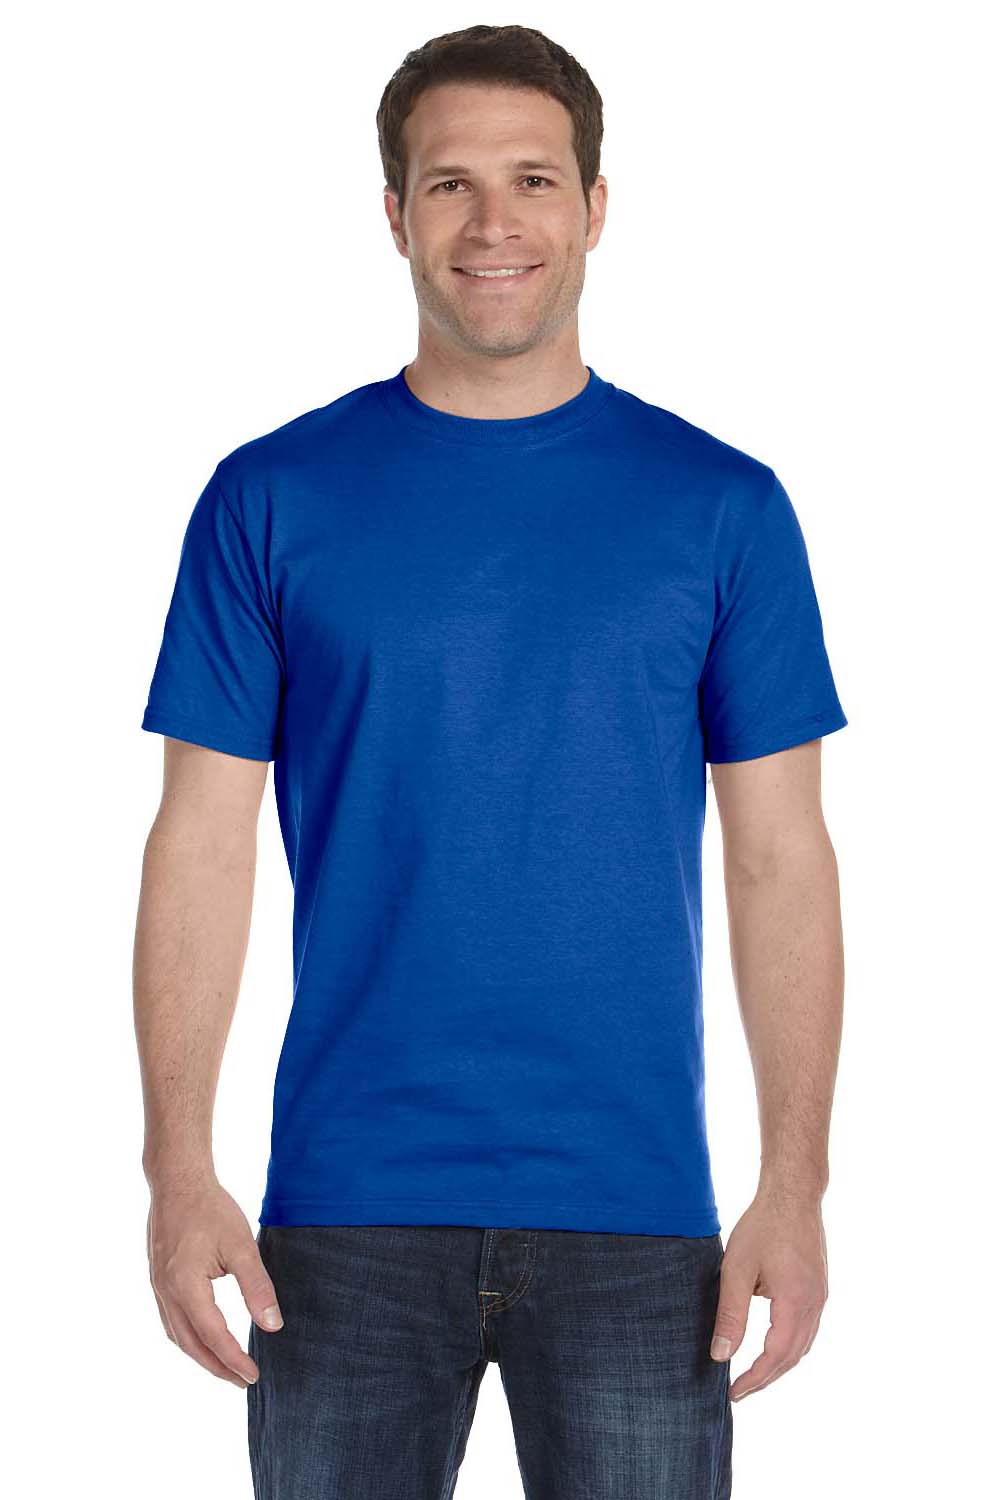 Gildan G800 Mens DryBlend Moisture Wicking Short Sleeve Crewneck T-Shirt Royal Blue Front